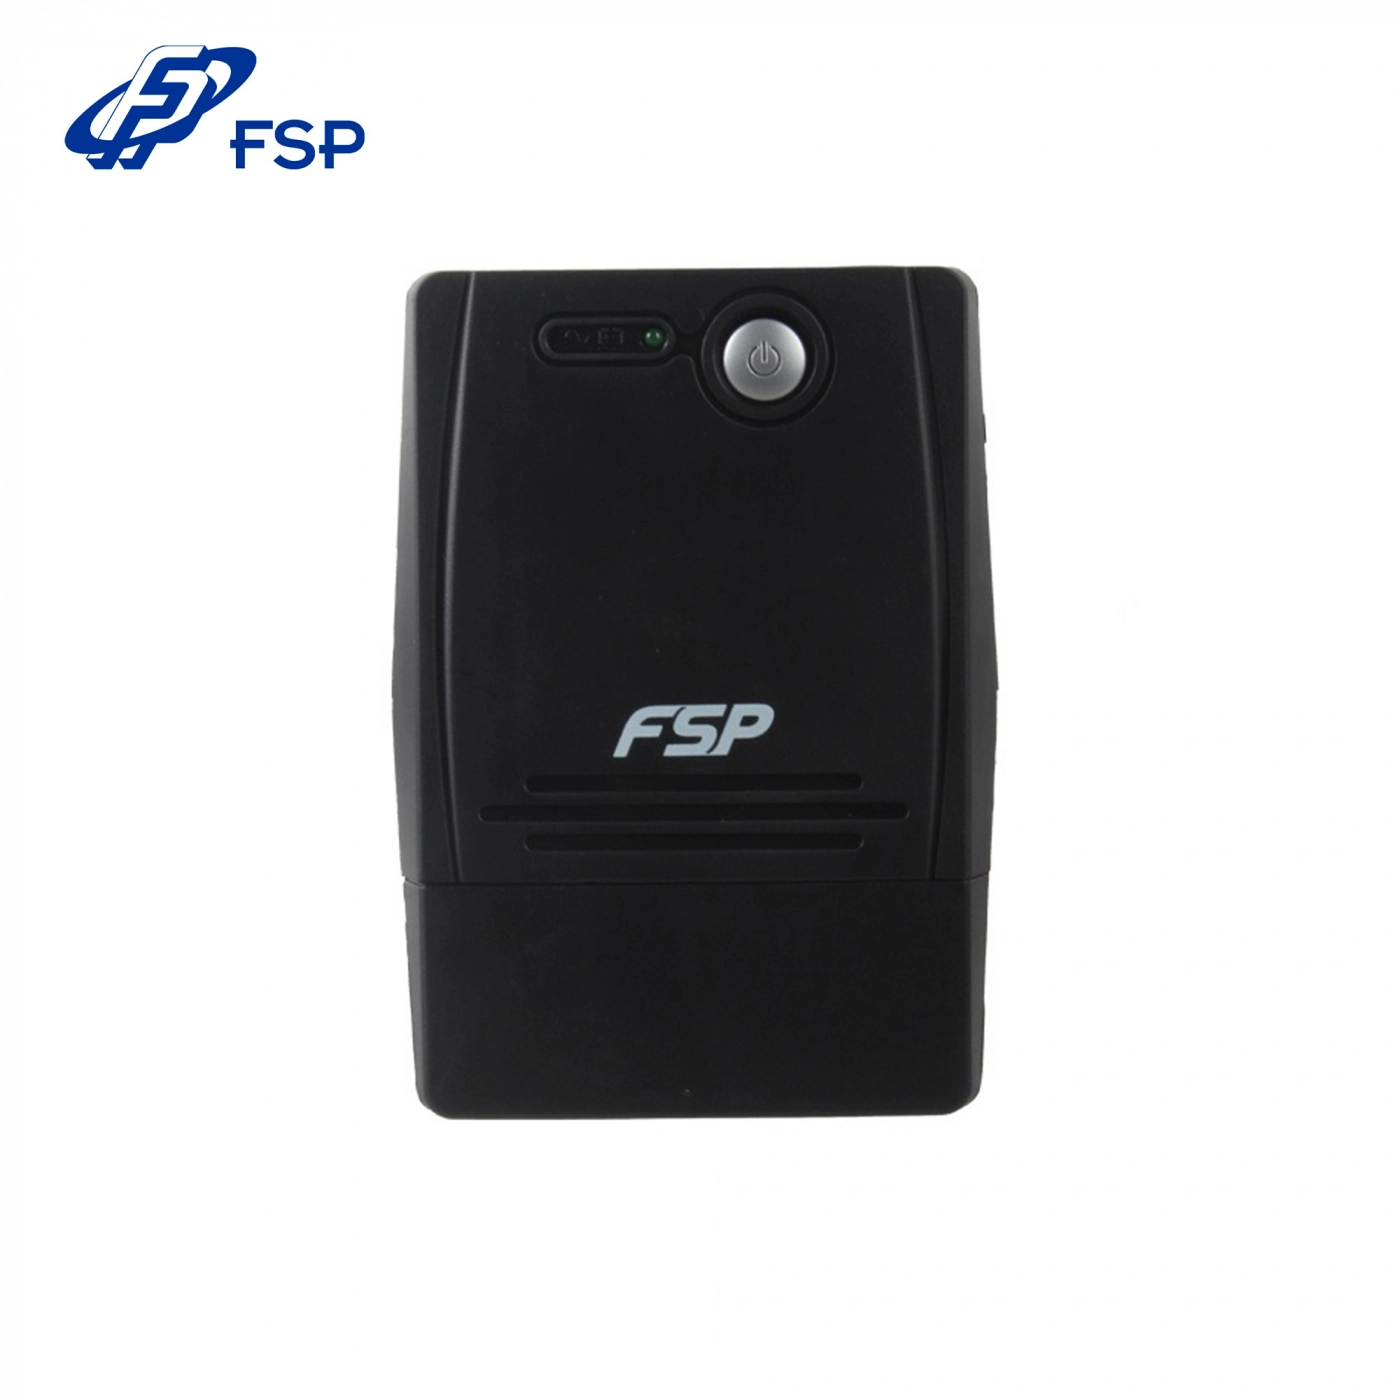 Купить ИБП FSP FP-850 - фото 2